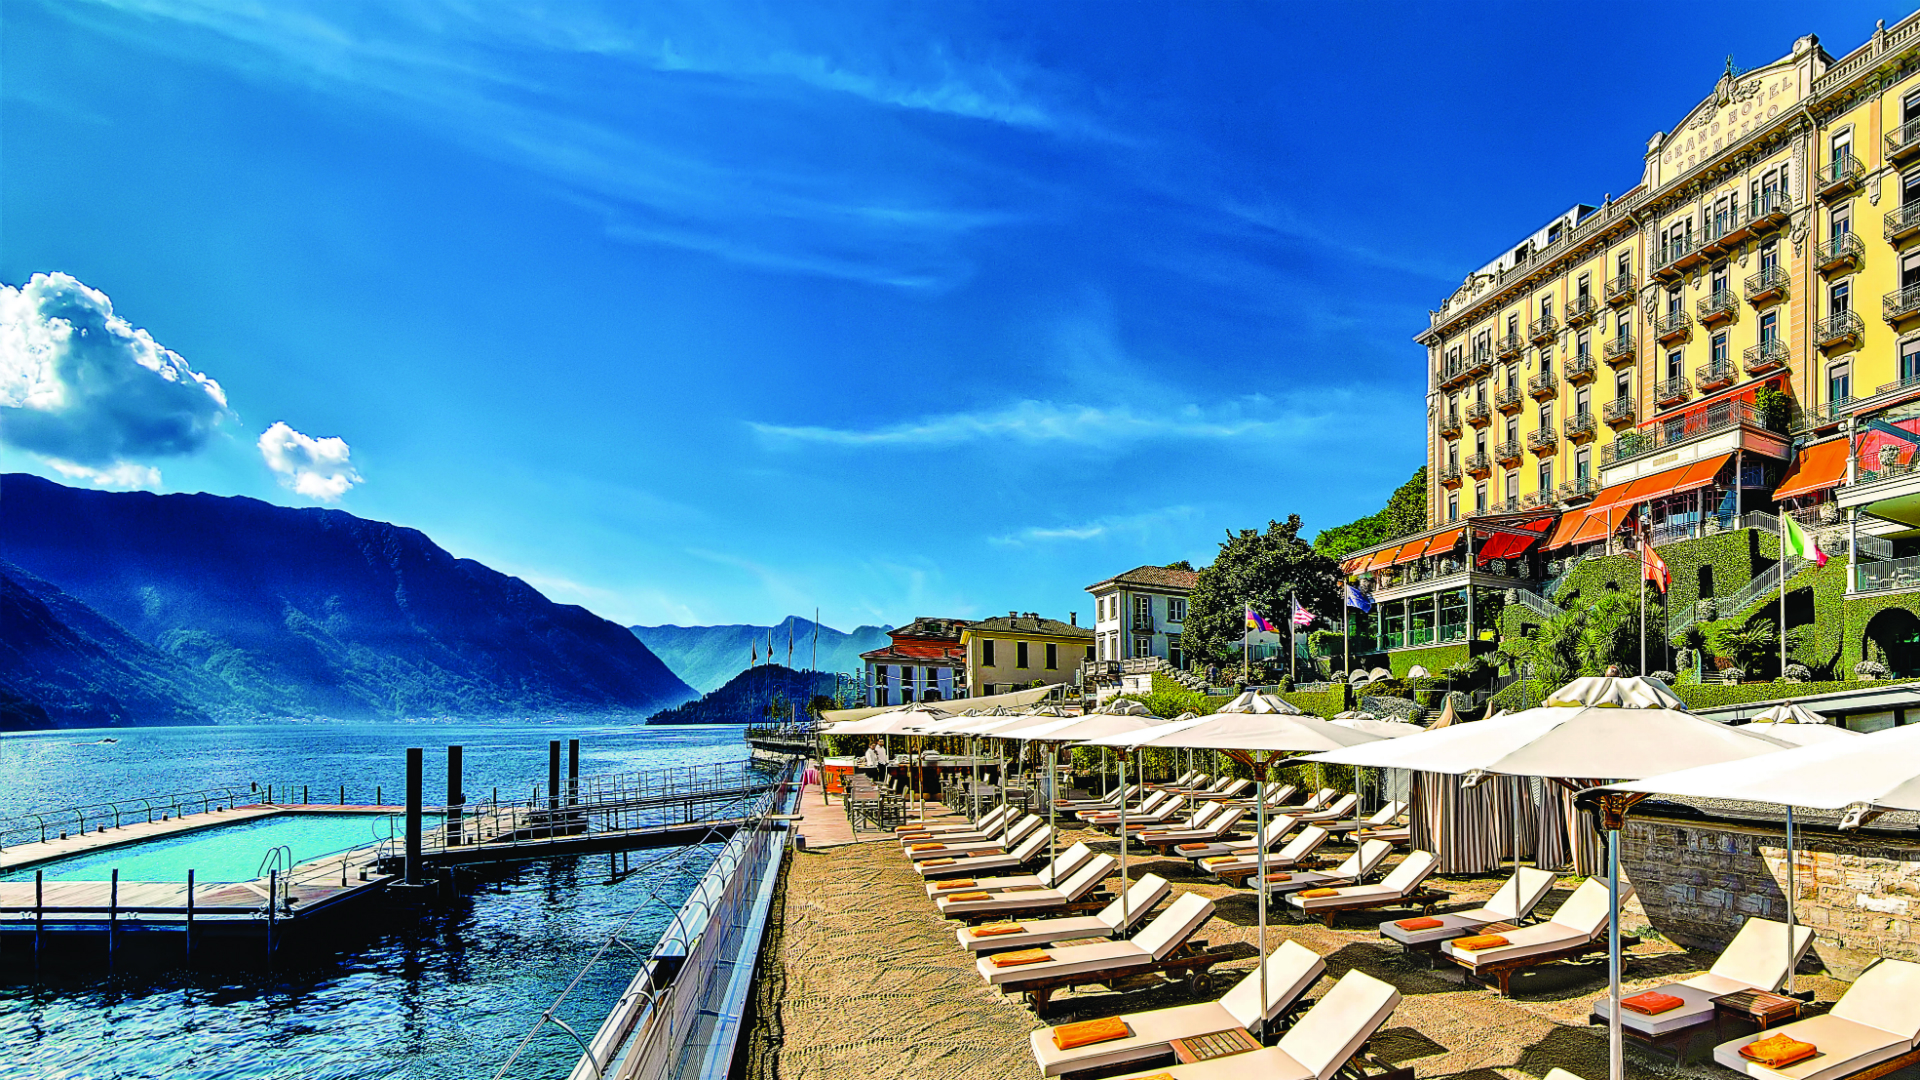 grand hotel tremezzo lake como italy